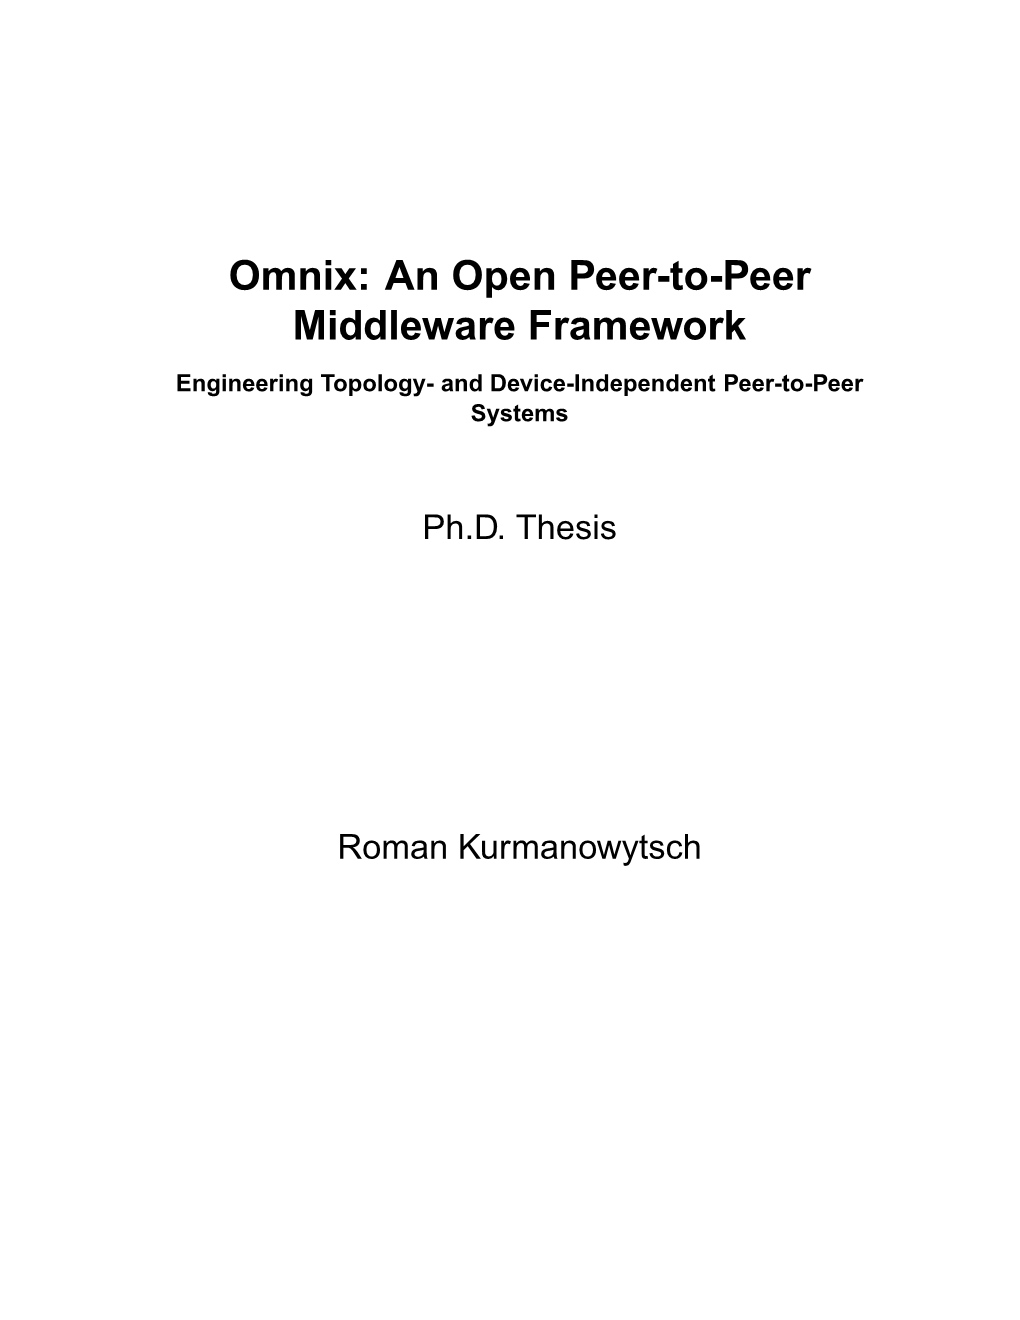 Omnix: an Open Peer-To-Peer Middleware Framework